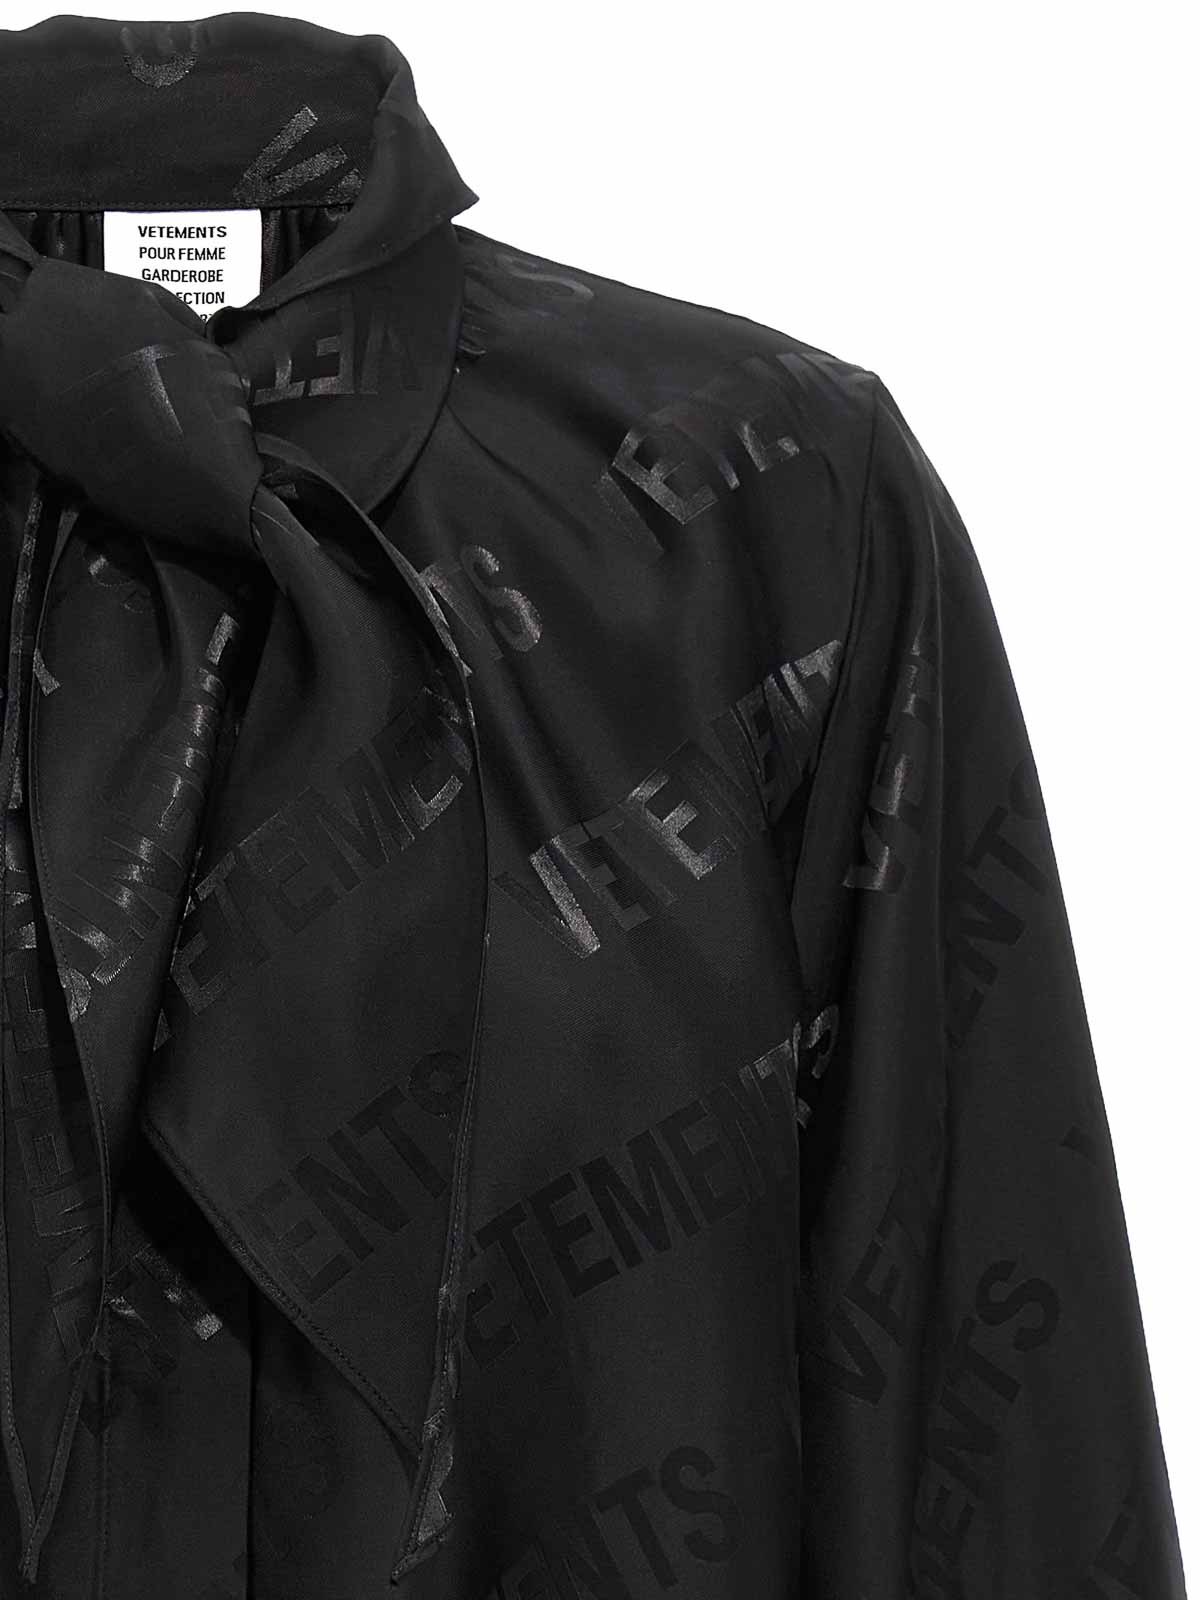 VETEMENTS monogram jacquard satin blouse - Black